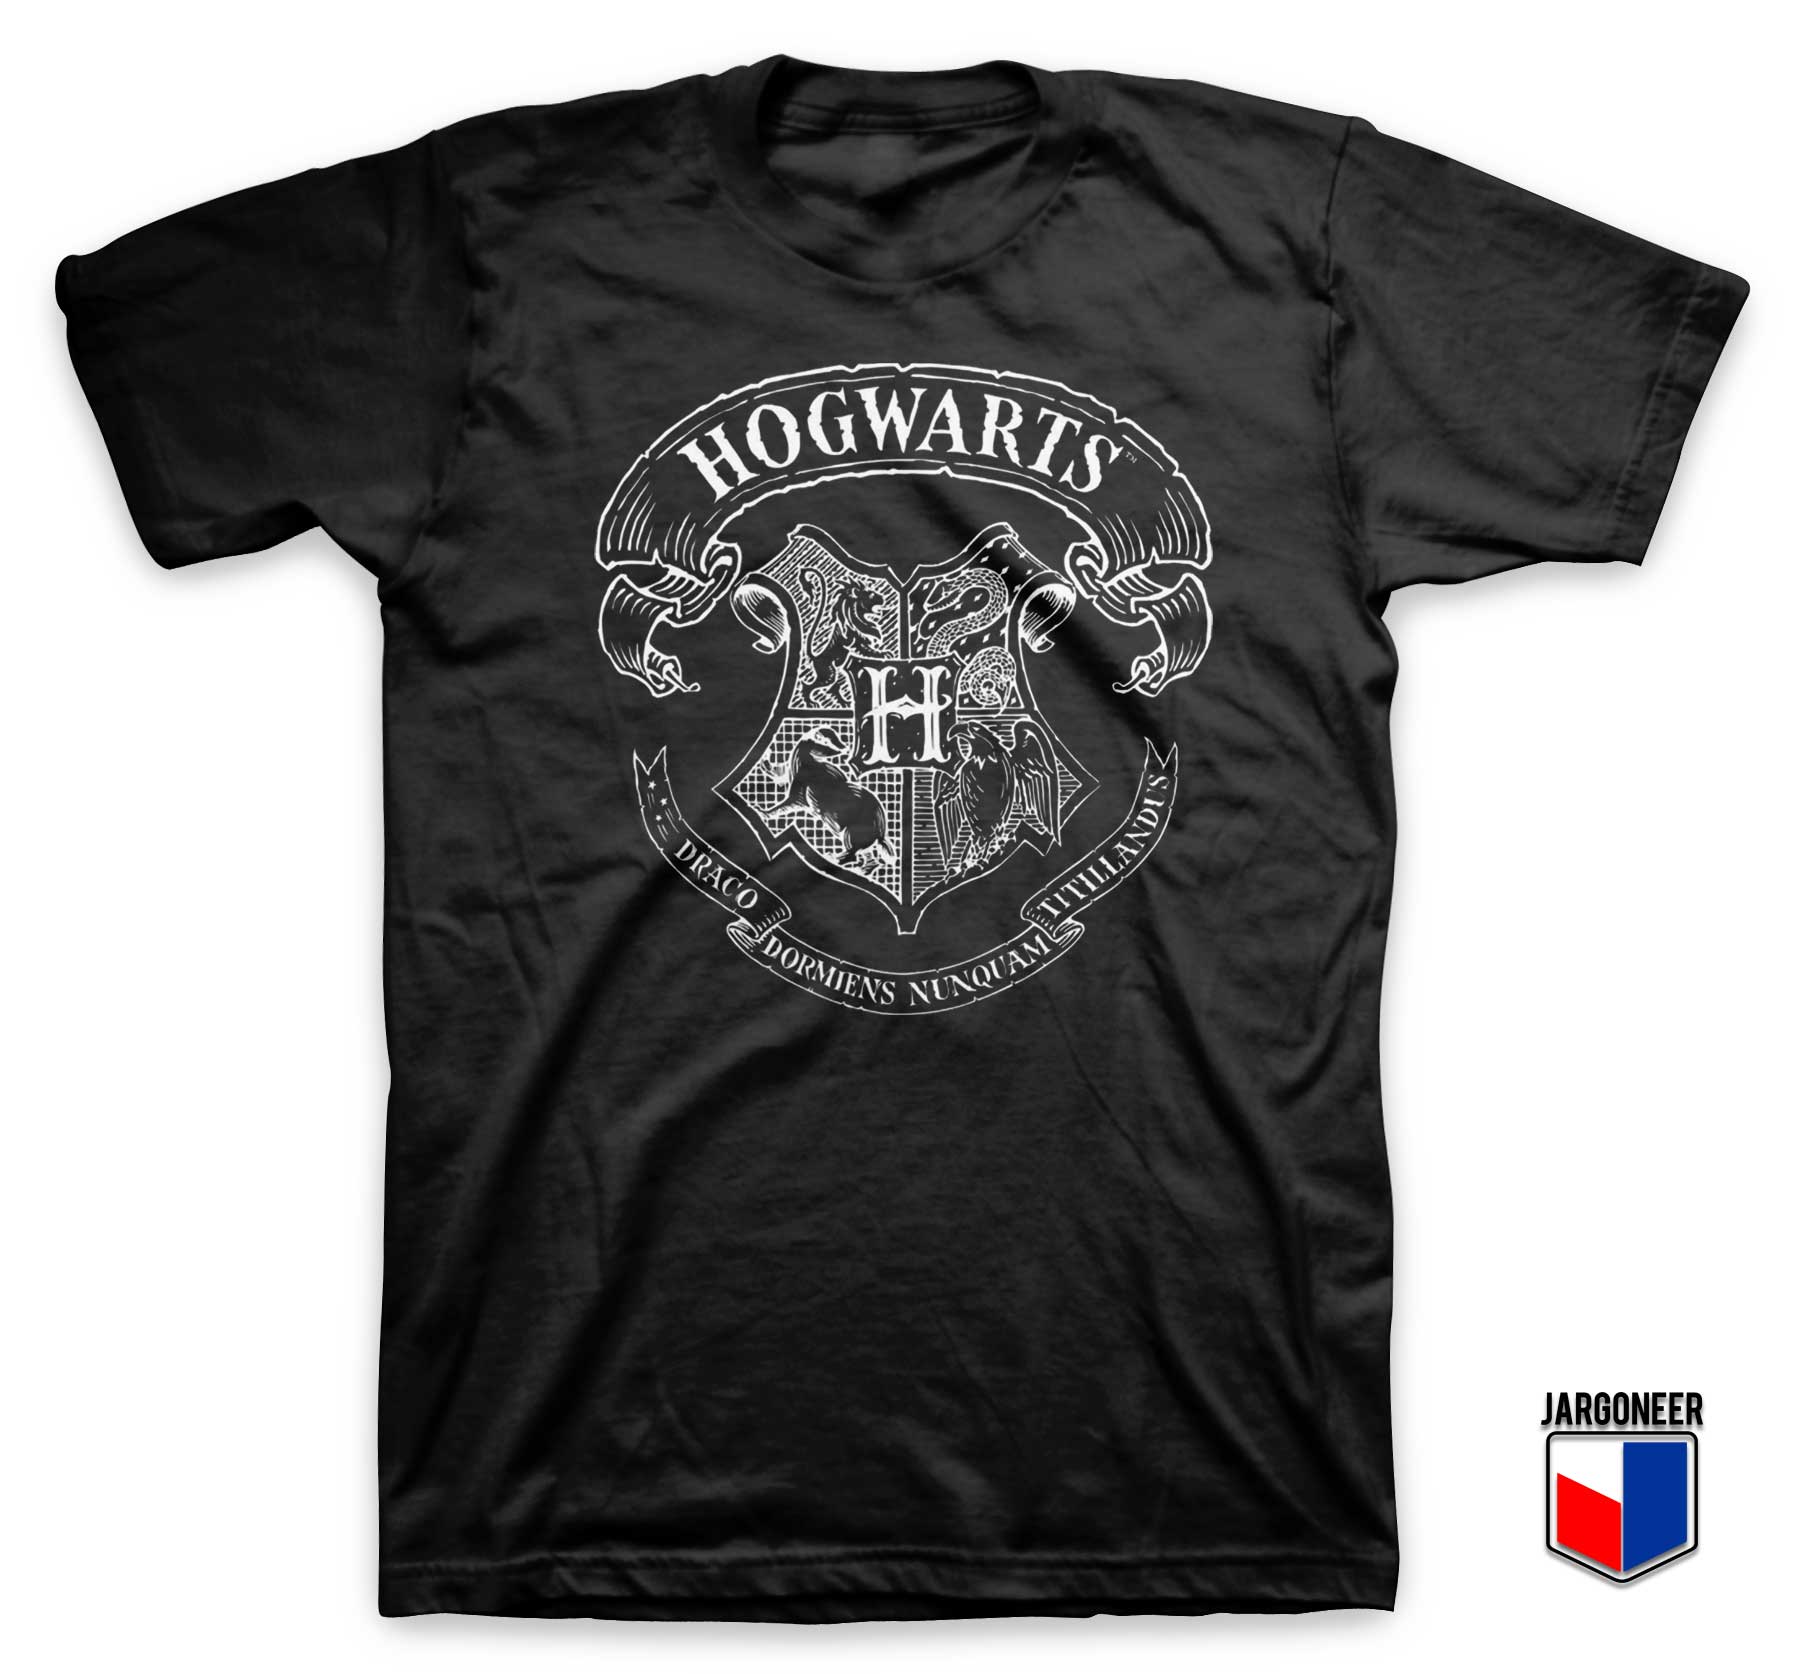 Harry Potter Hogwarts T Shirt - Shop Unique Graphic Cool Shirt Designs